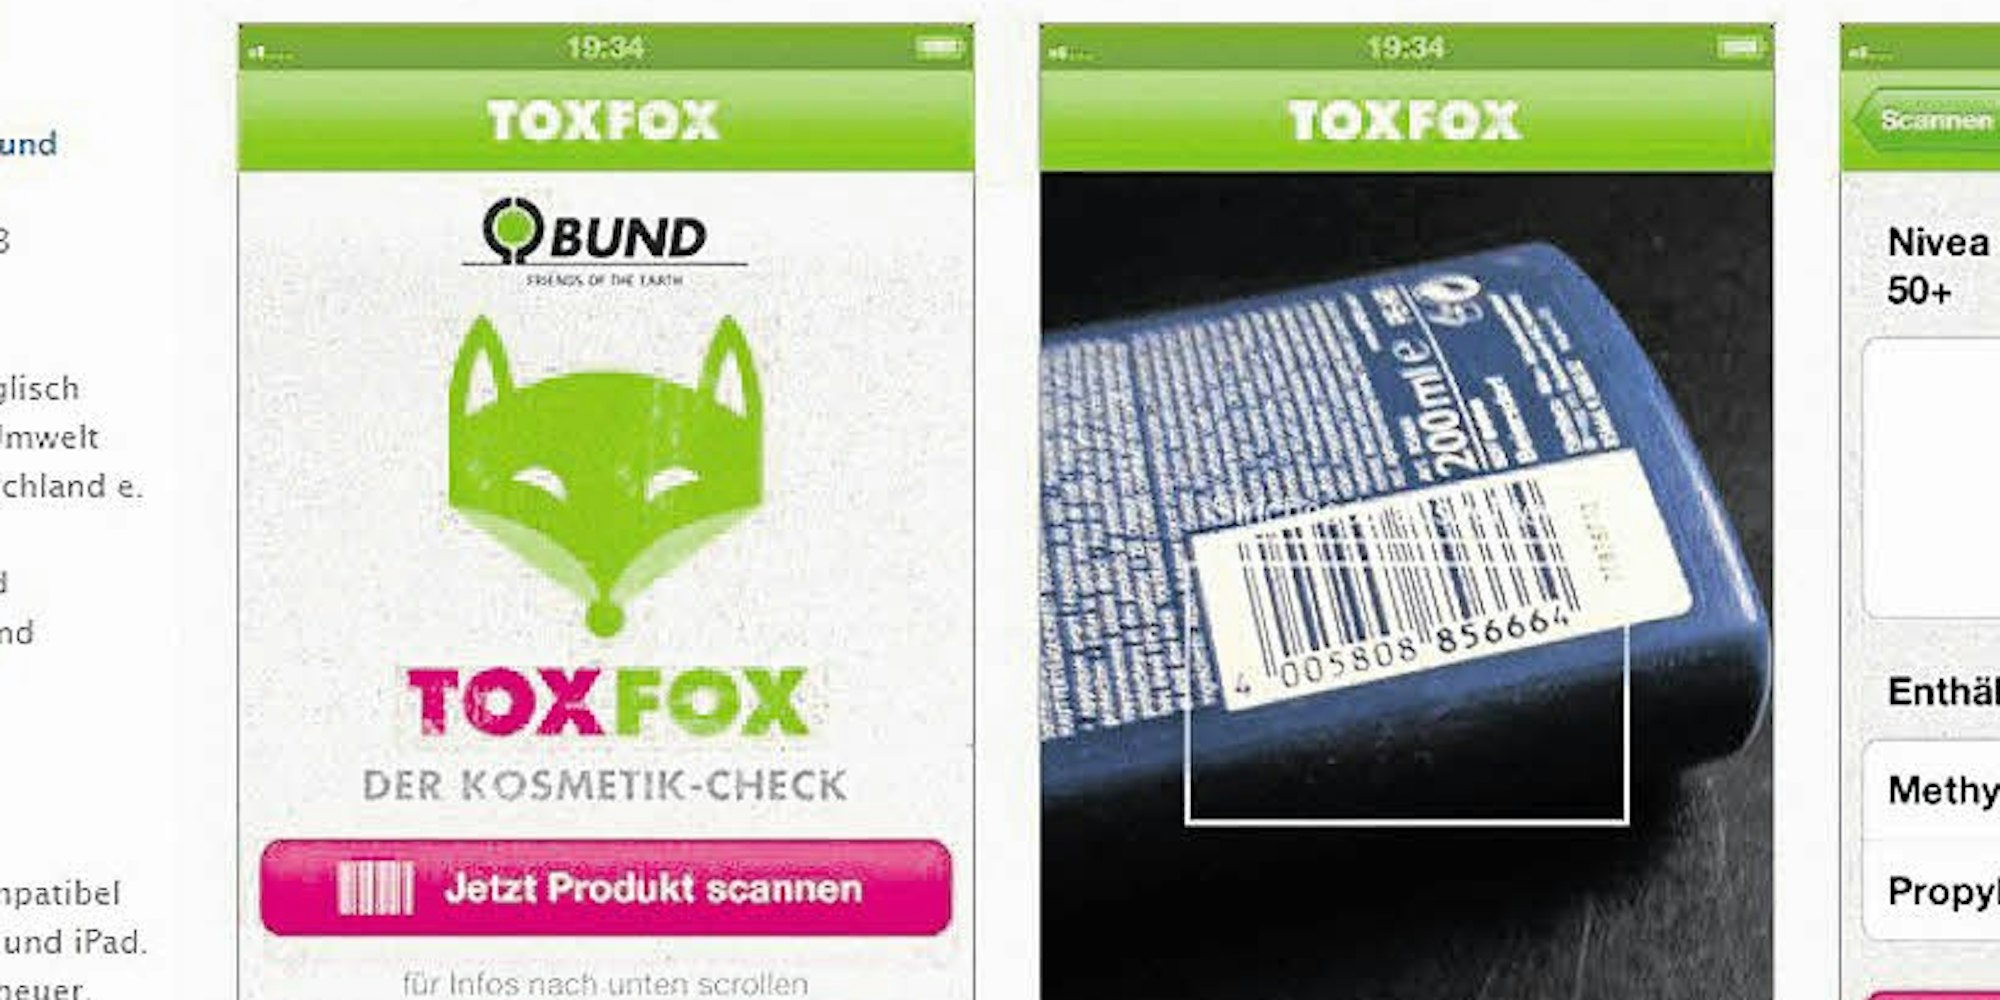 Mit der App "Tox Fox"sollen sich Kosmetika leicht nach Schadstoffen checken lassen.